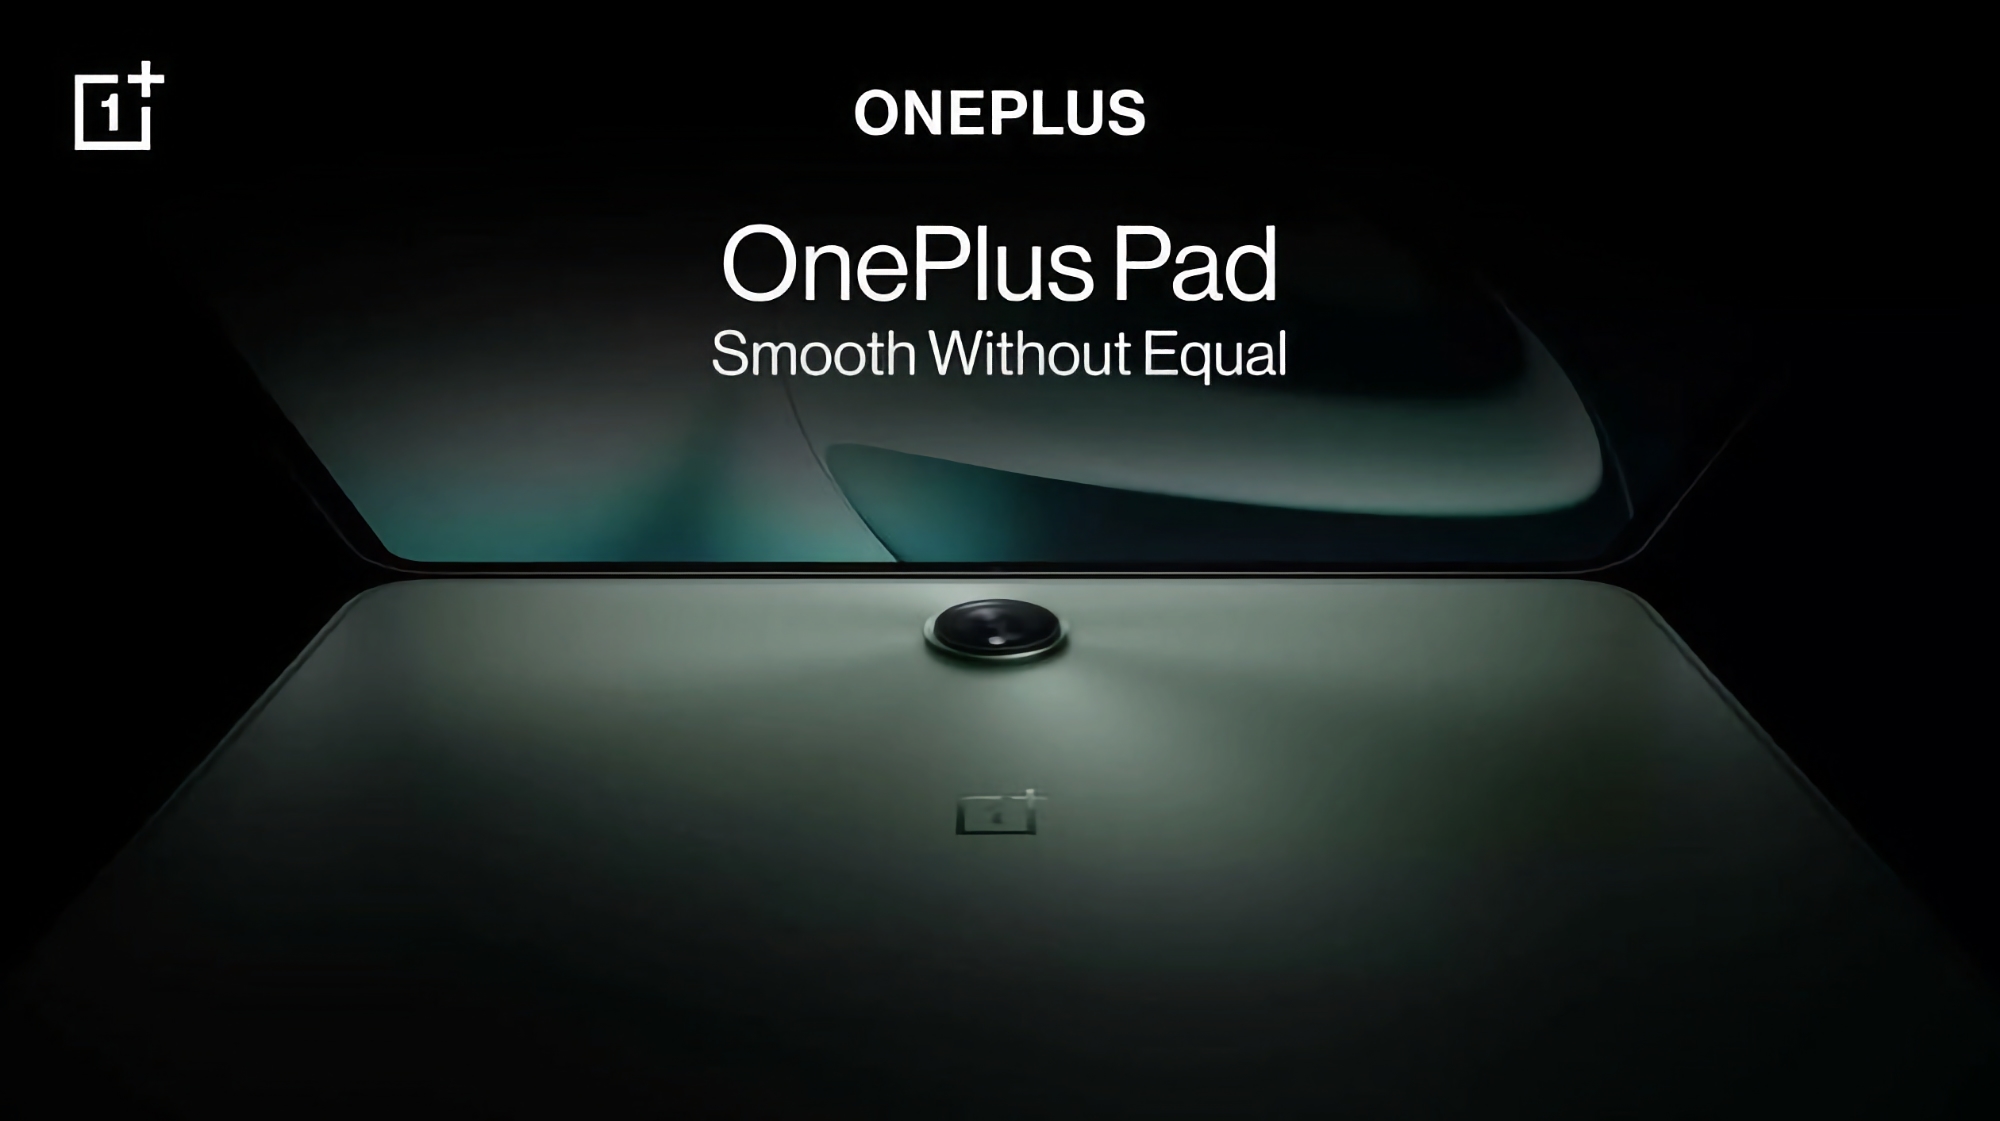 Eine angenehme Überraschung: Das OnePlus Pad wird mit einer magnetischen Tastatur und einem Stylus geliefert